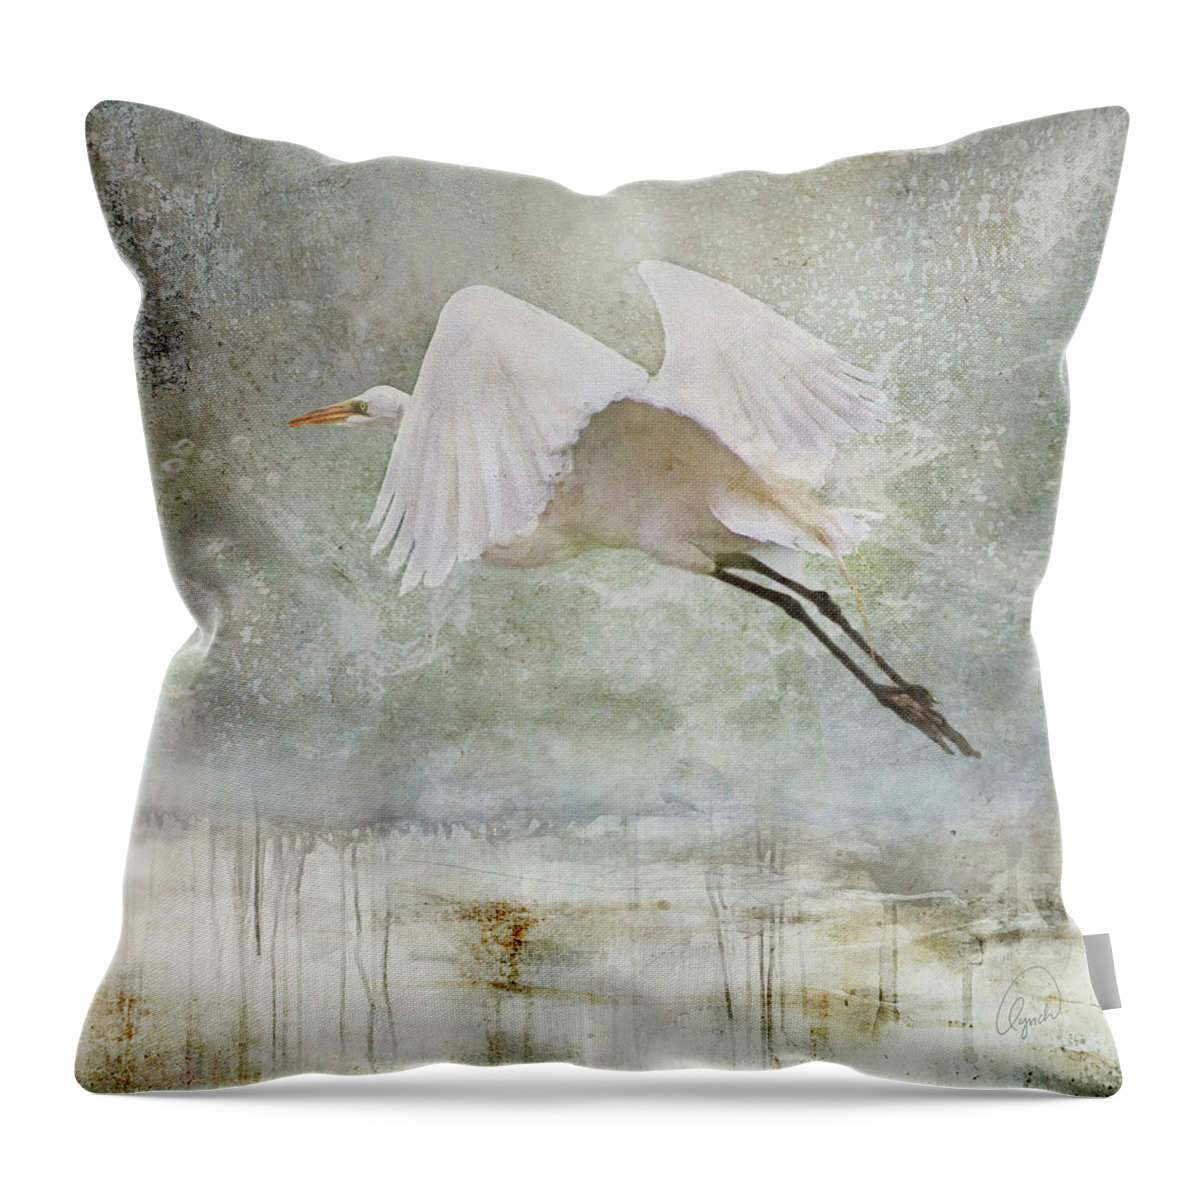 Bird Throw Pillow featuring the photograph Departure by Karen Lynch